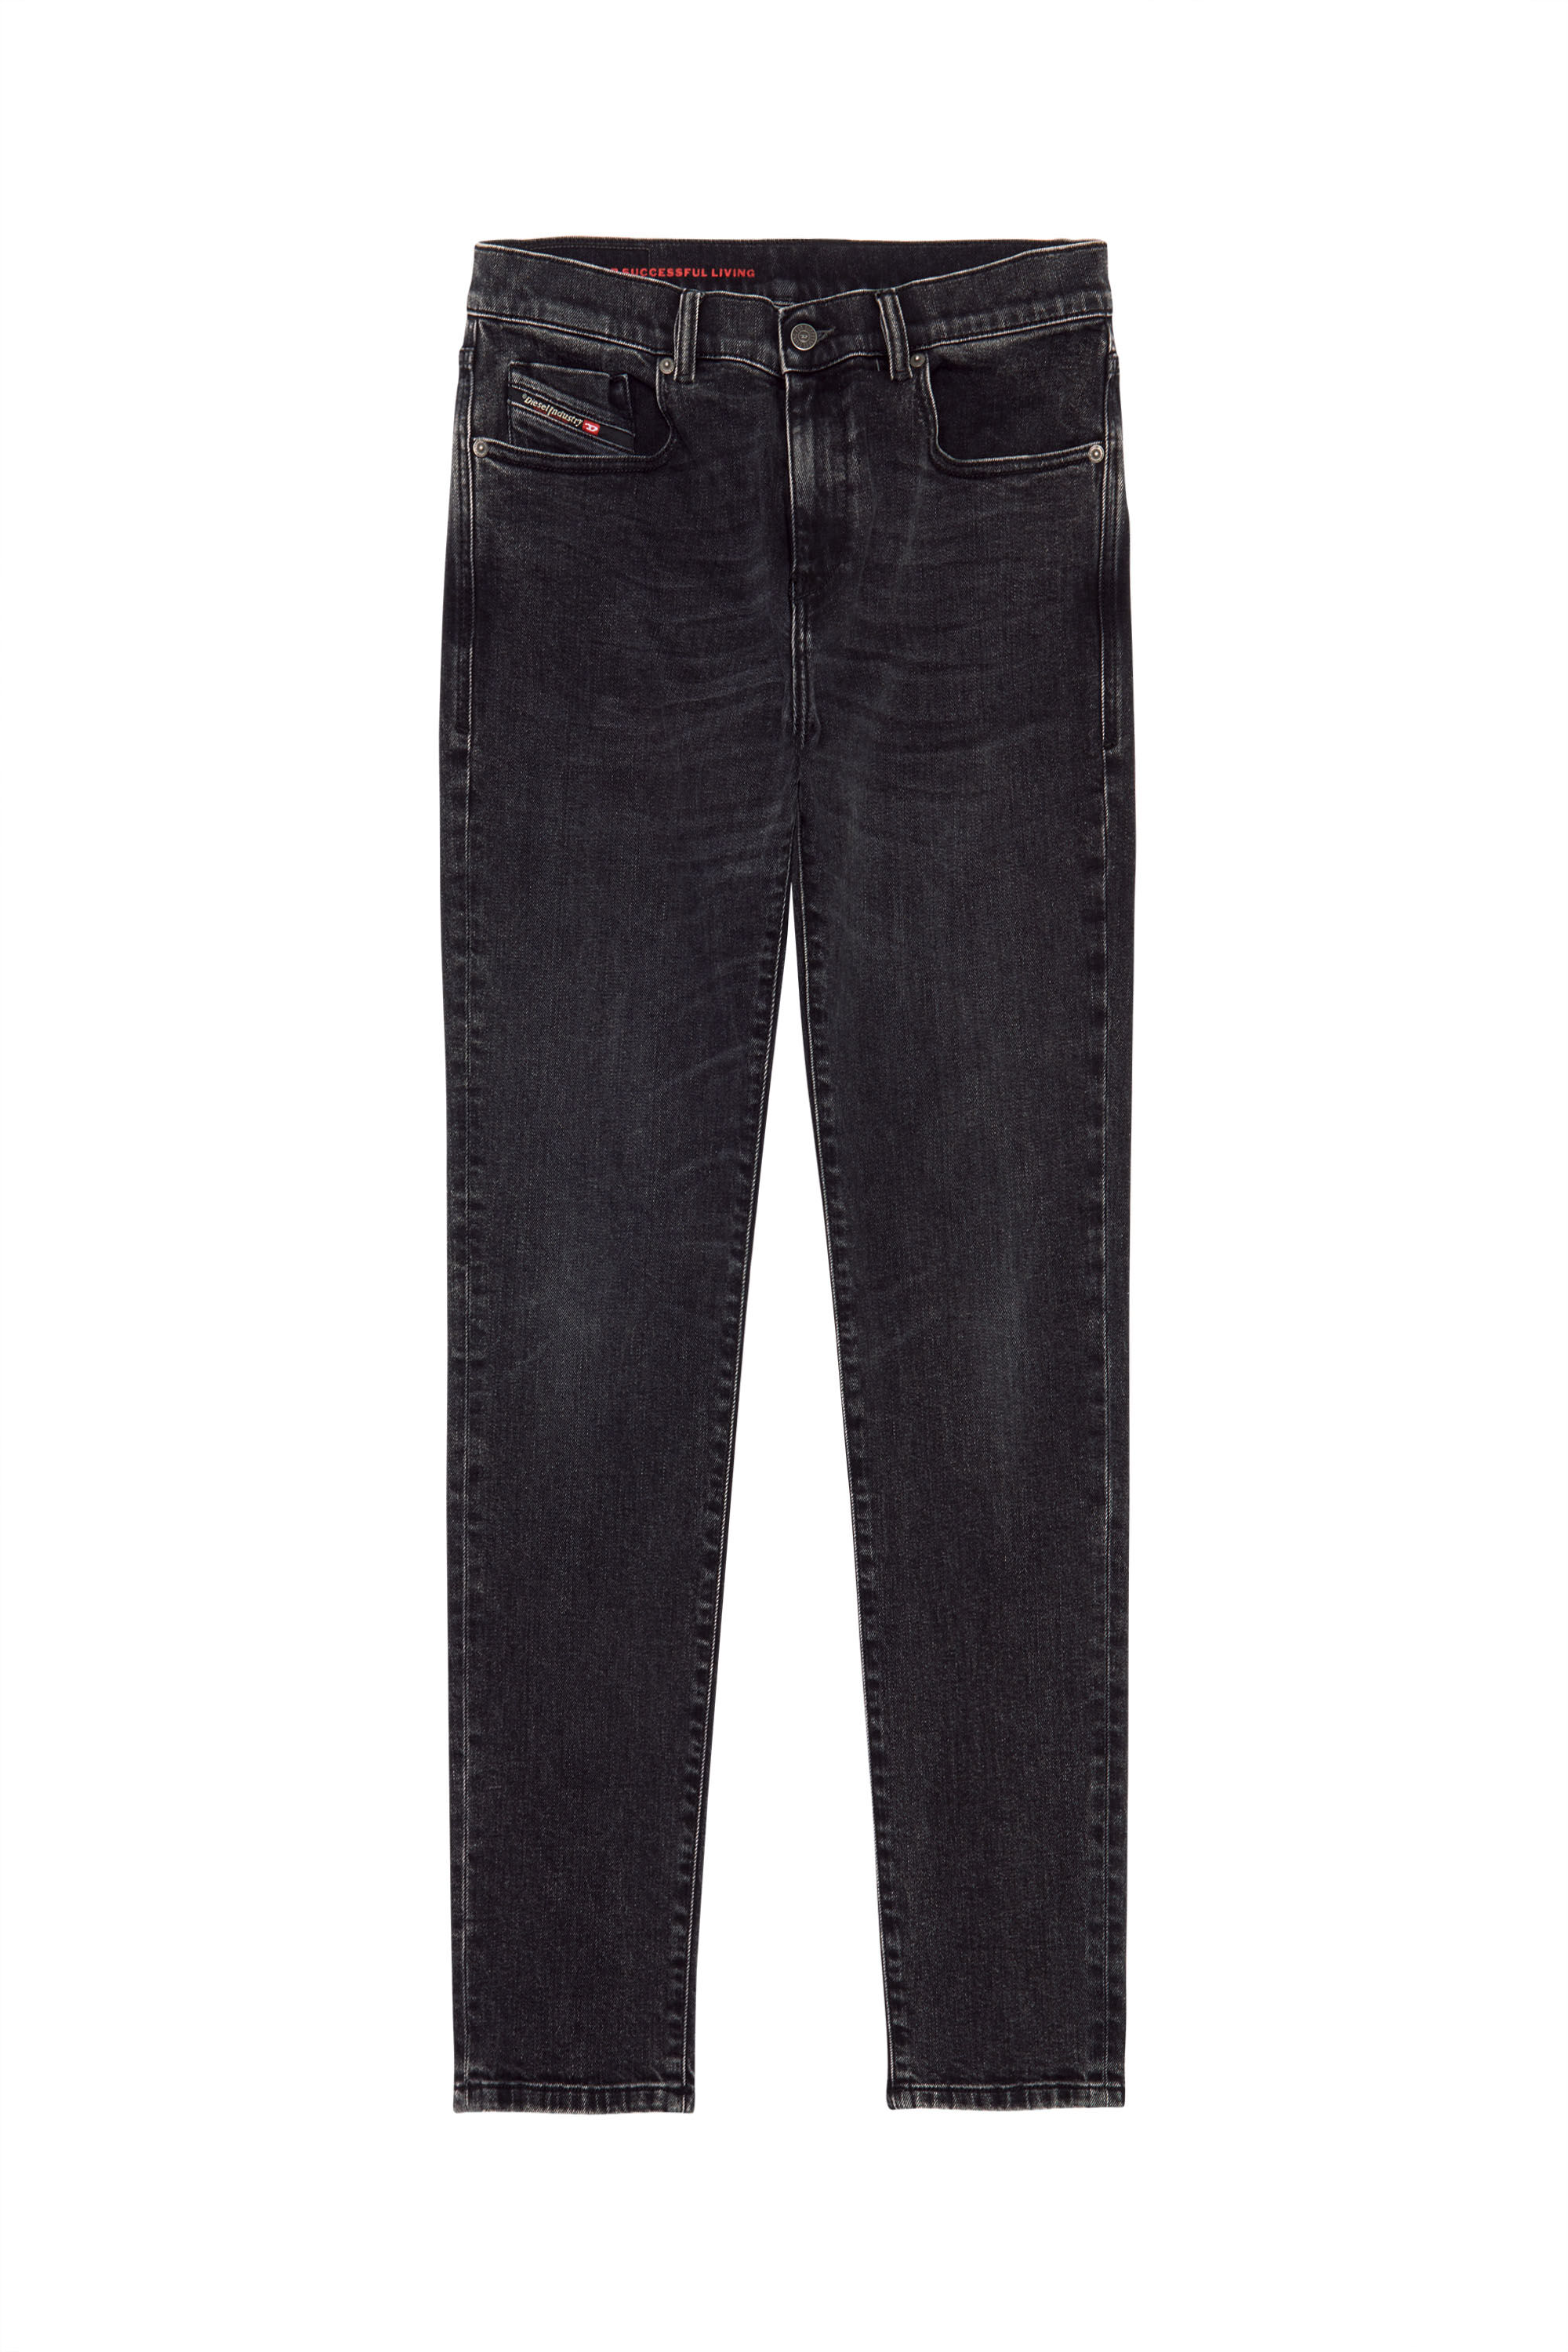 Diesel - Man Slim Jeans 2019 D-Strukt 09B83, Black/Dark grey - Image 2